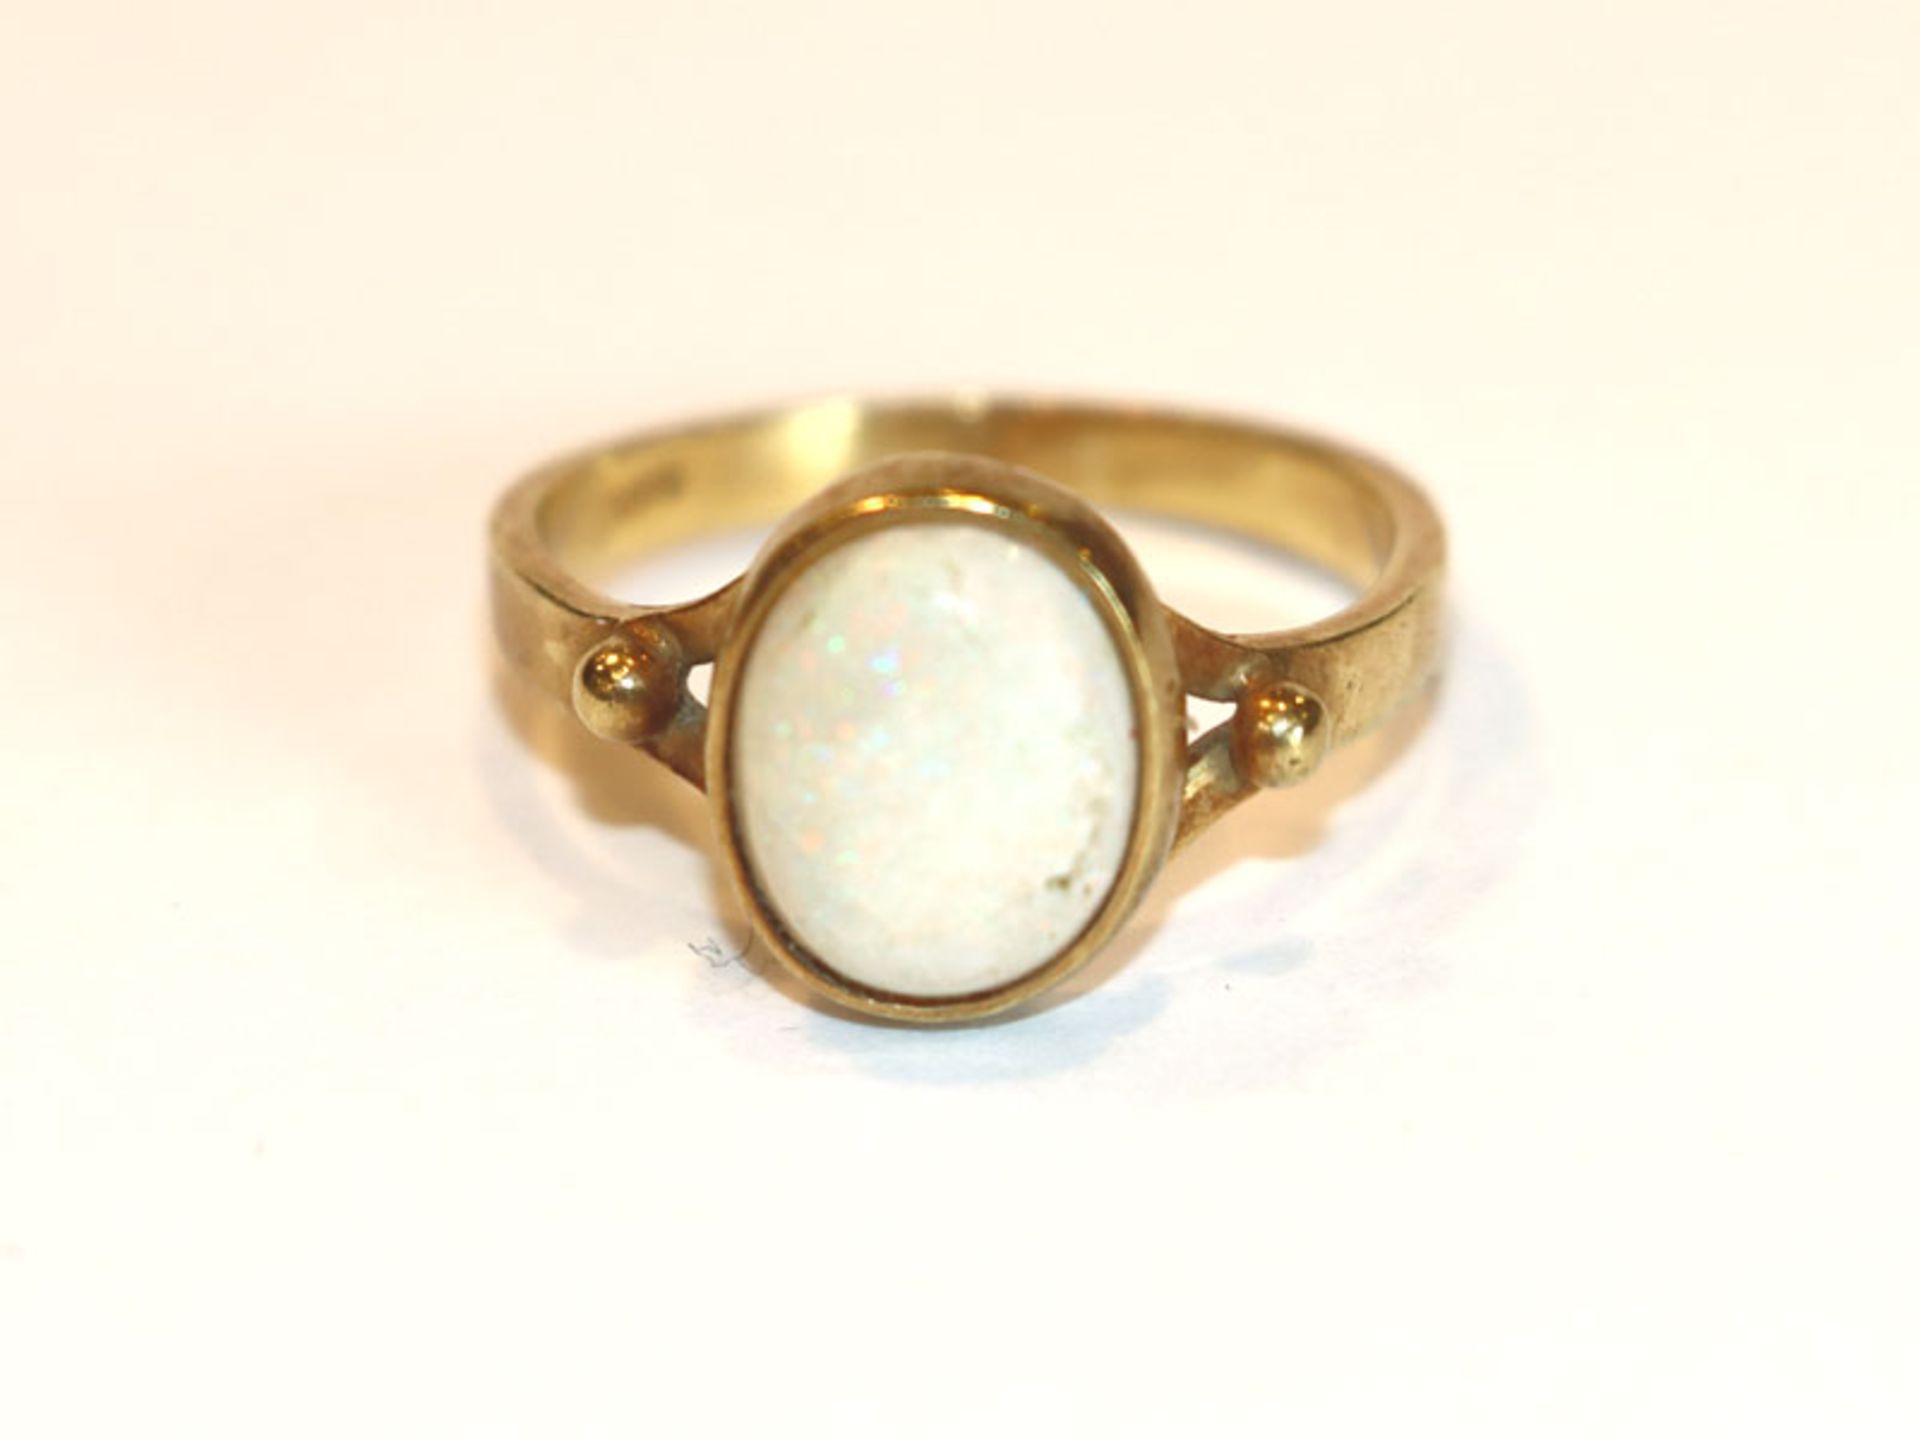 14 k Gelbgold Ring mit Opal, beschädigt/gebrochen, 3,1 gr., Gr. 53